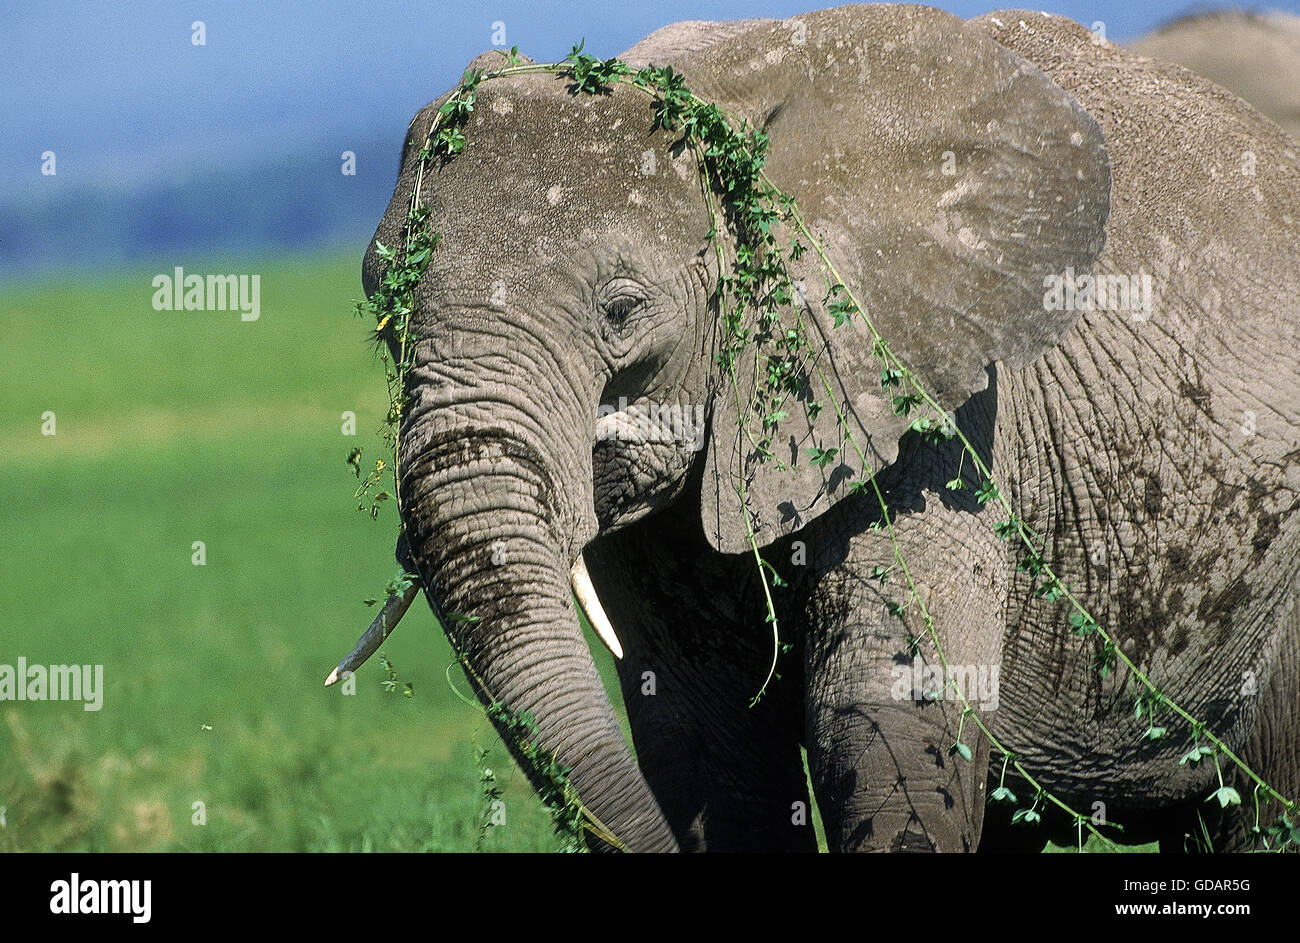 Elefante Africano Loxodonta africana, Kenia Foto de stock